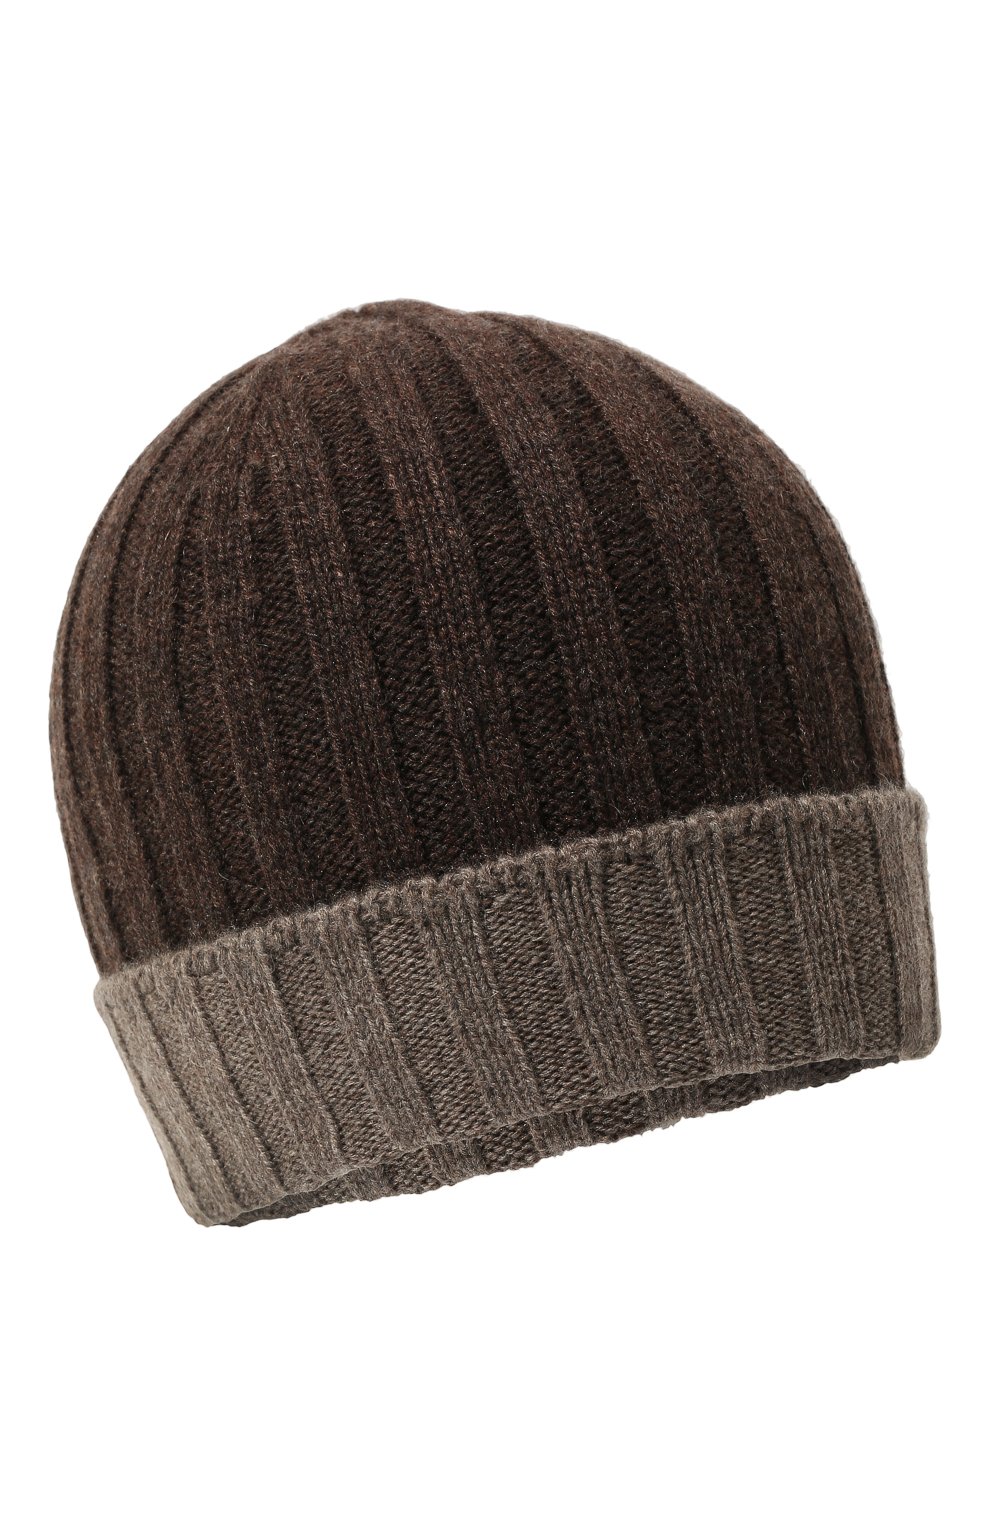 Мужская кашемировая шапка GRAN SASSO темно-коричневого цвета, арт. 13165/15562 | Фото 1 (Материал: Текстиль, Кашемир, Шерсть; Кросс-КТ: Трикотаж)